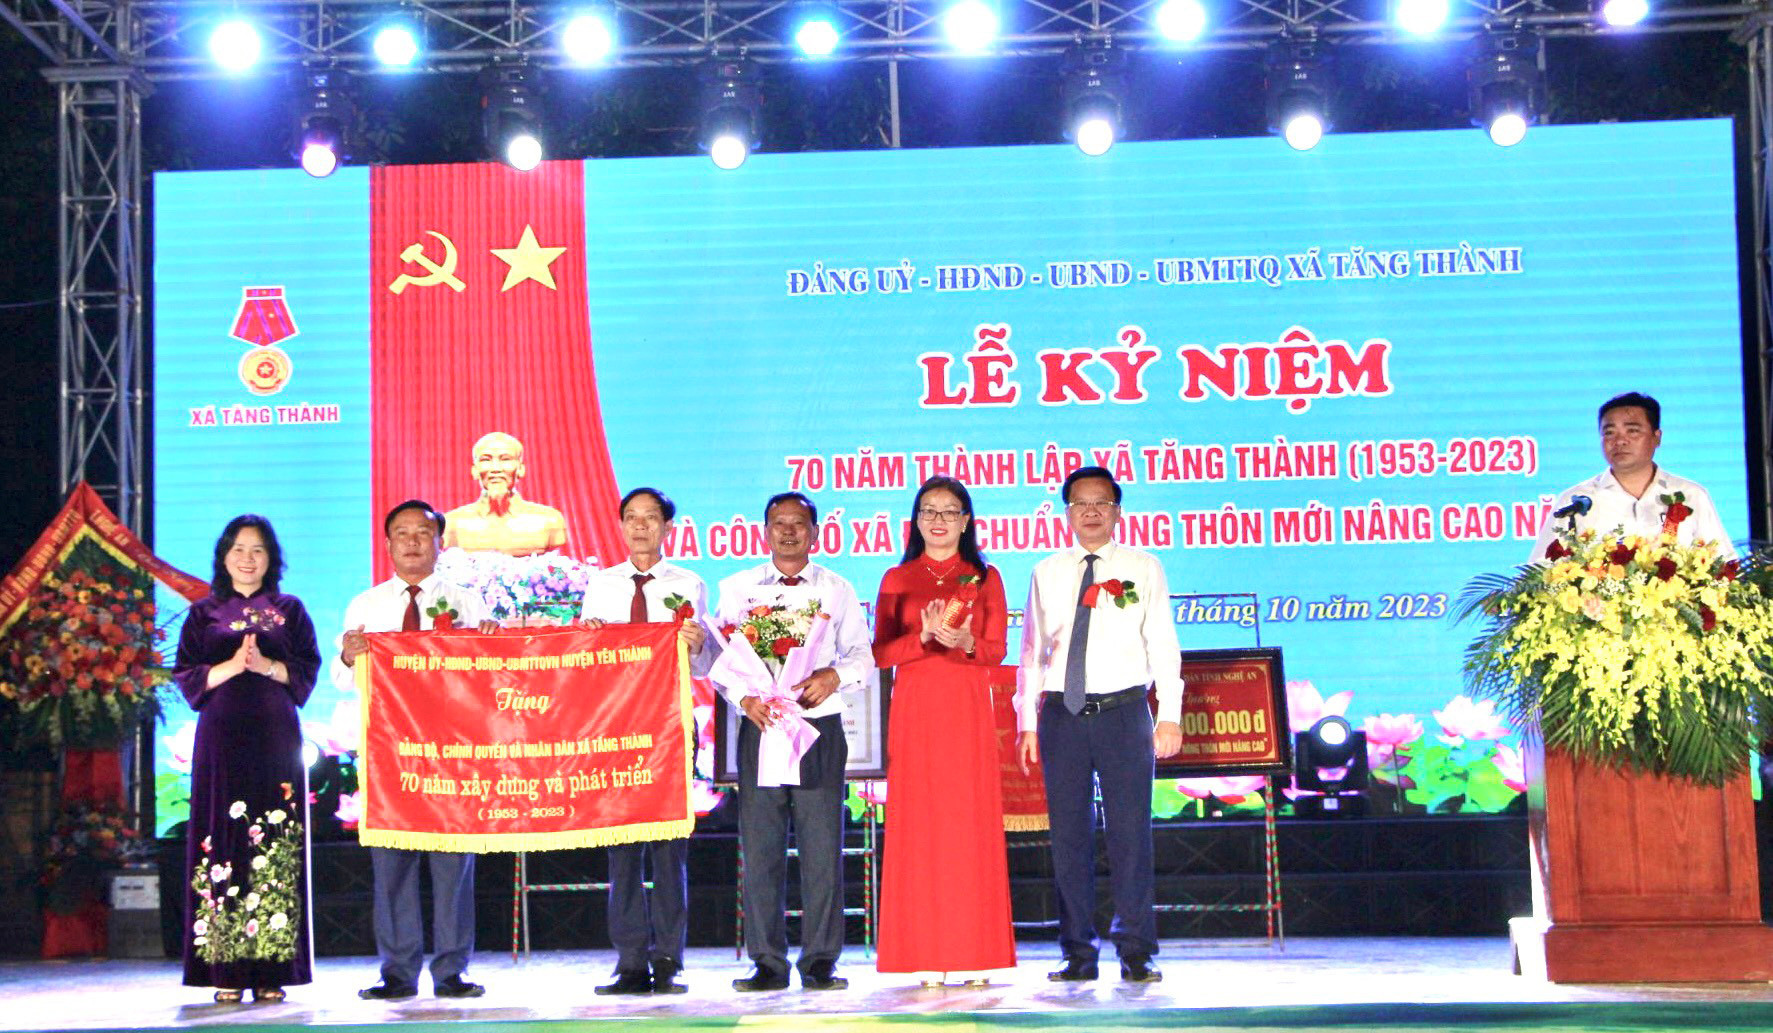 A 10 Lãnh đạo huyện Yên Thành trao tặng xã Bức trướng “Đảng bộ, Chính quyền, Nhân dân xã Tăng Thành 70 năm xây dựng và phát triển (1953-2023.jpg